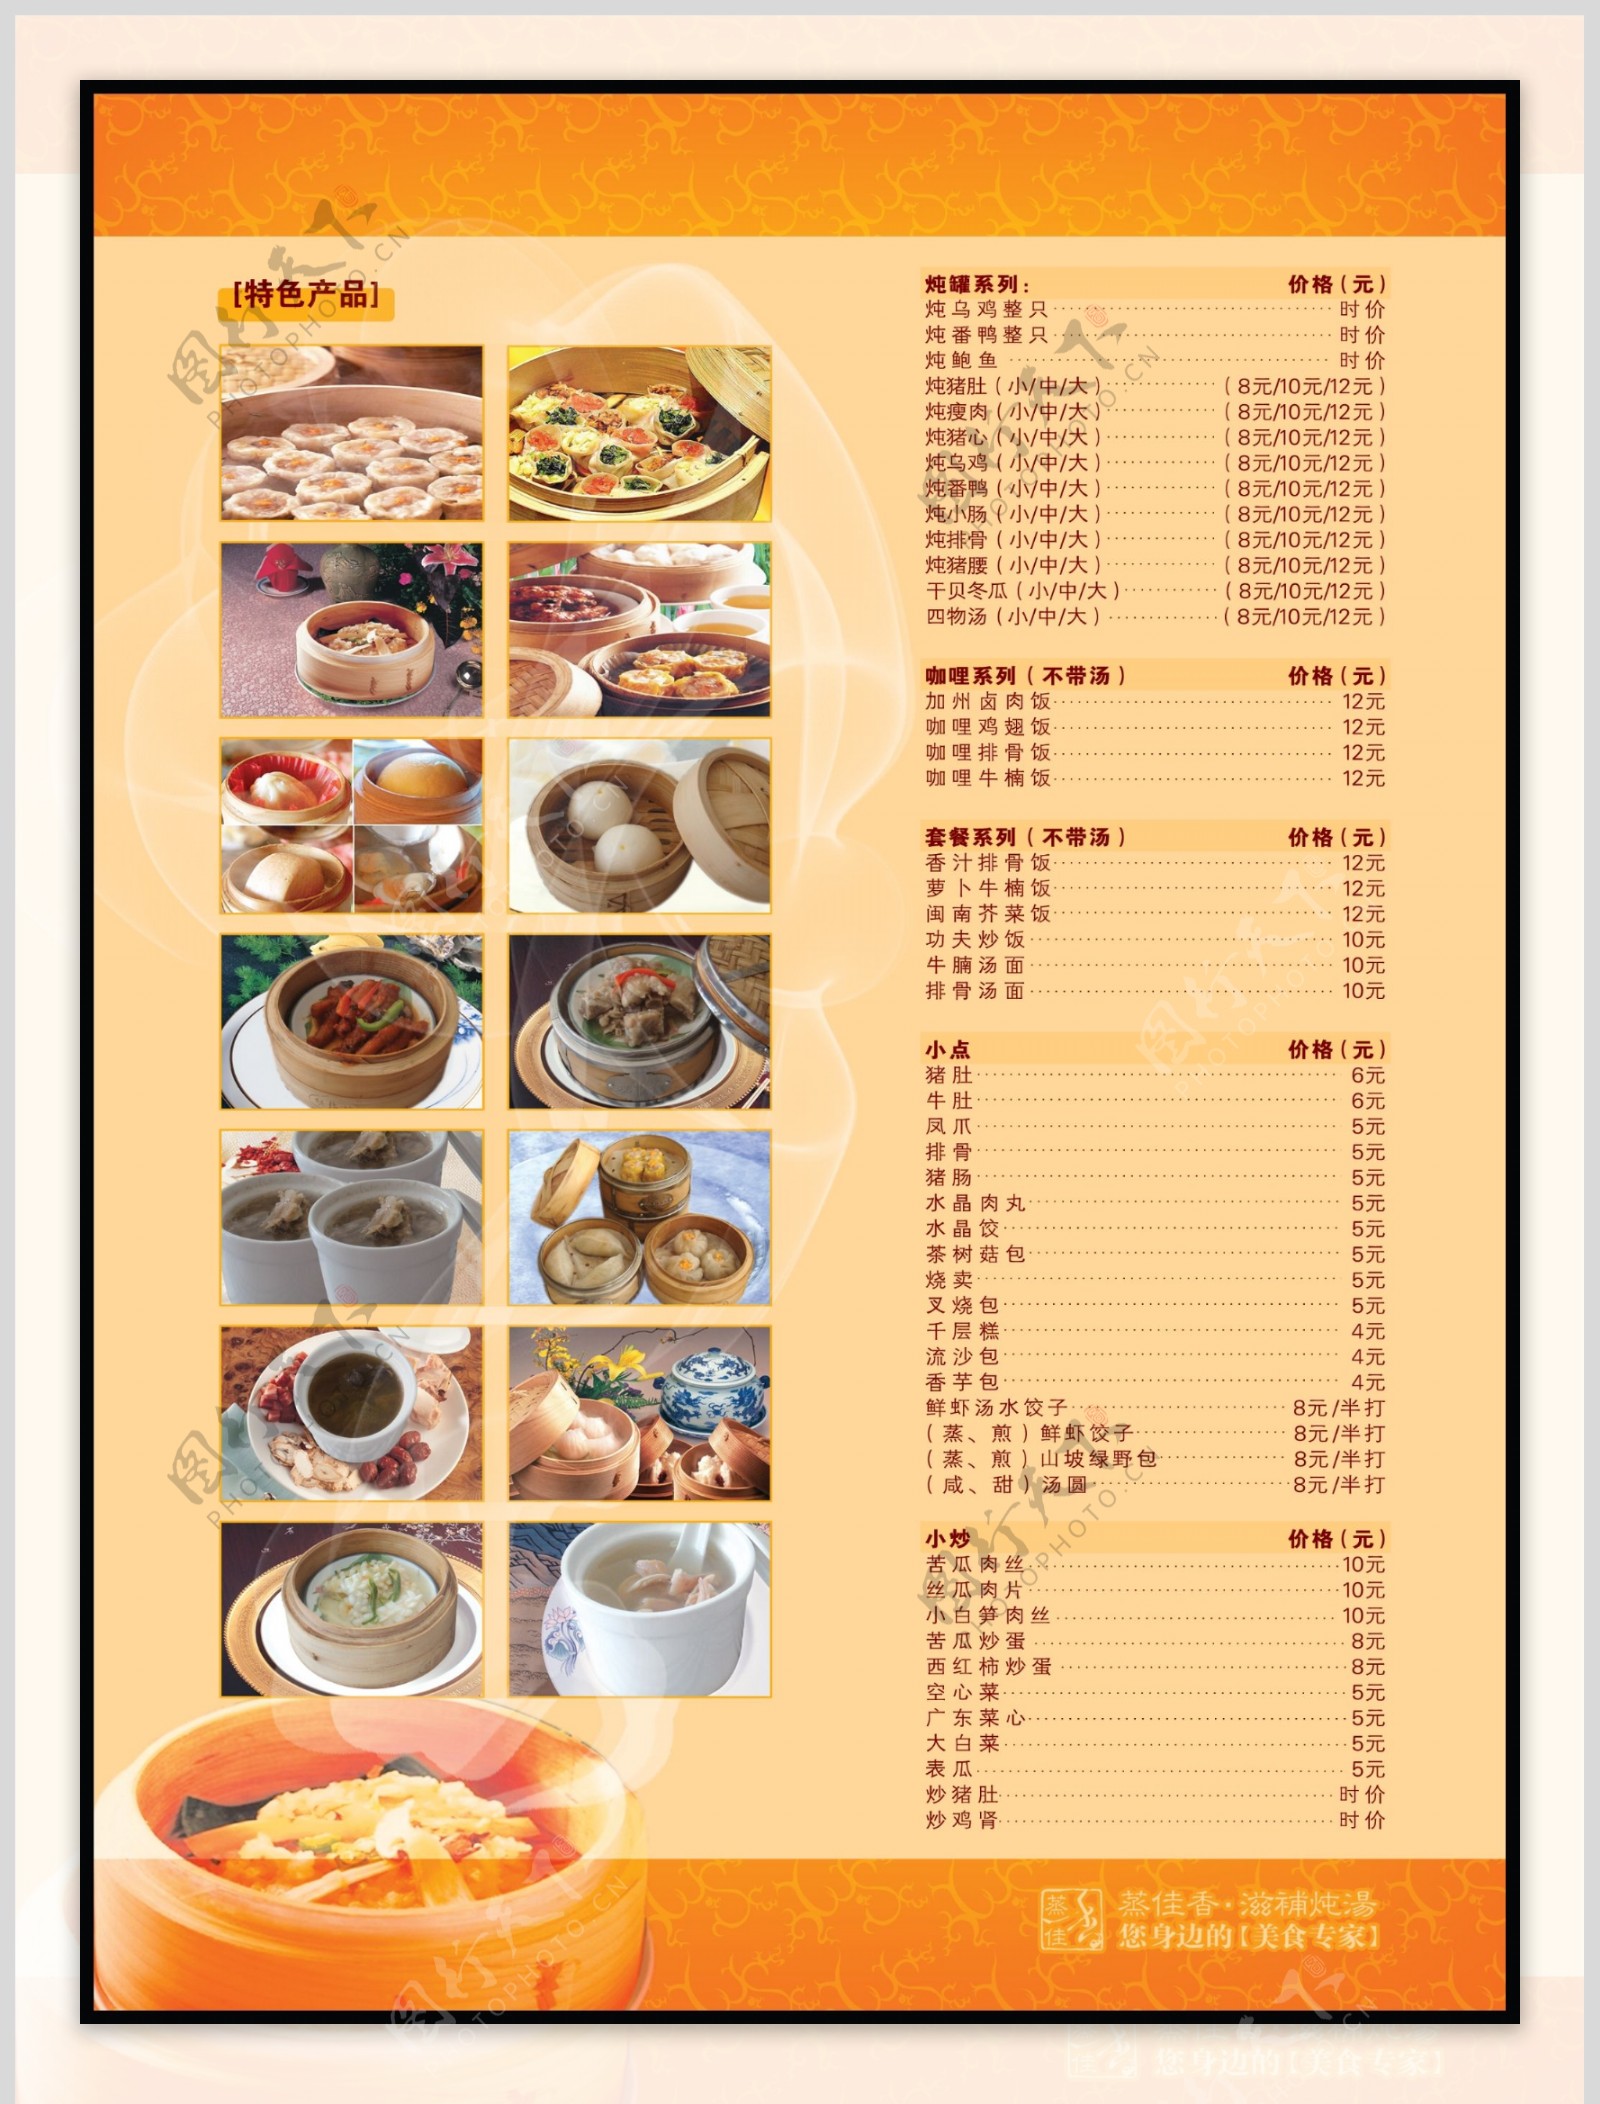 饮食炖汤菜单传单图片